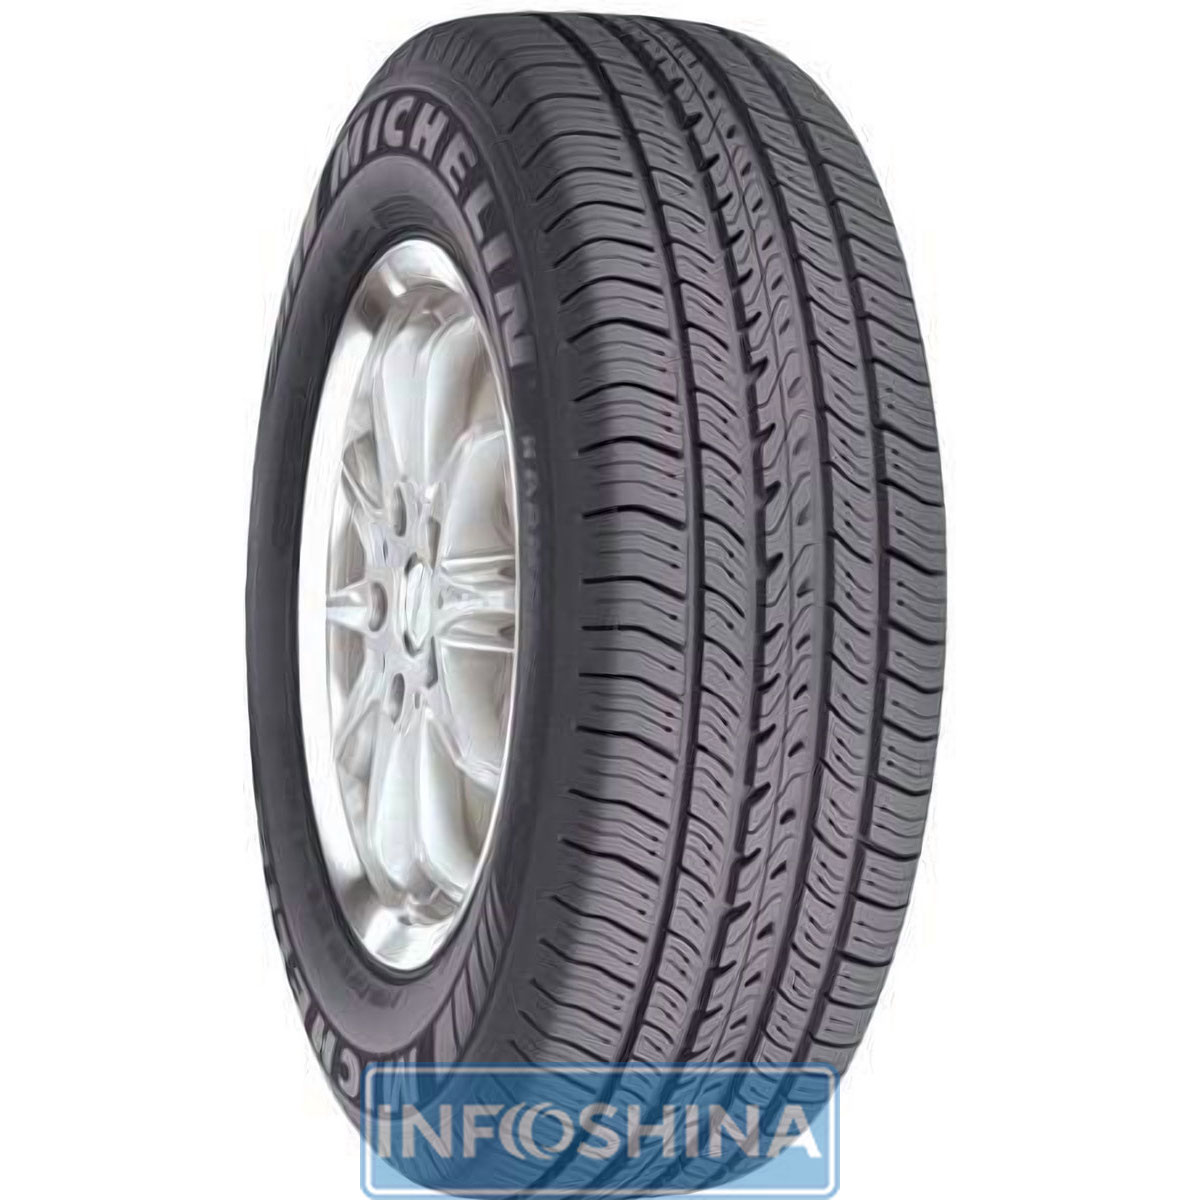 Купить шины Michelin Harmony 225/60 R17 98T